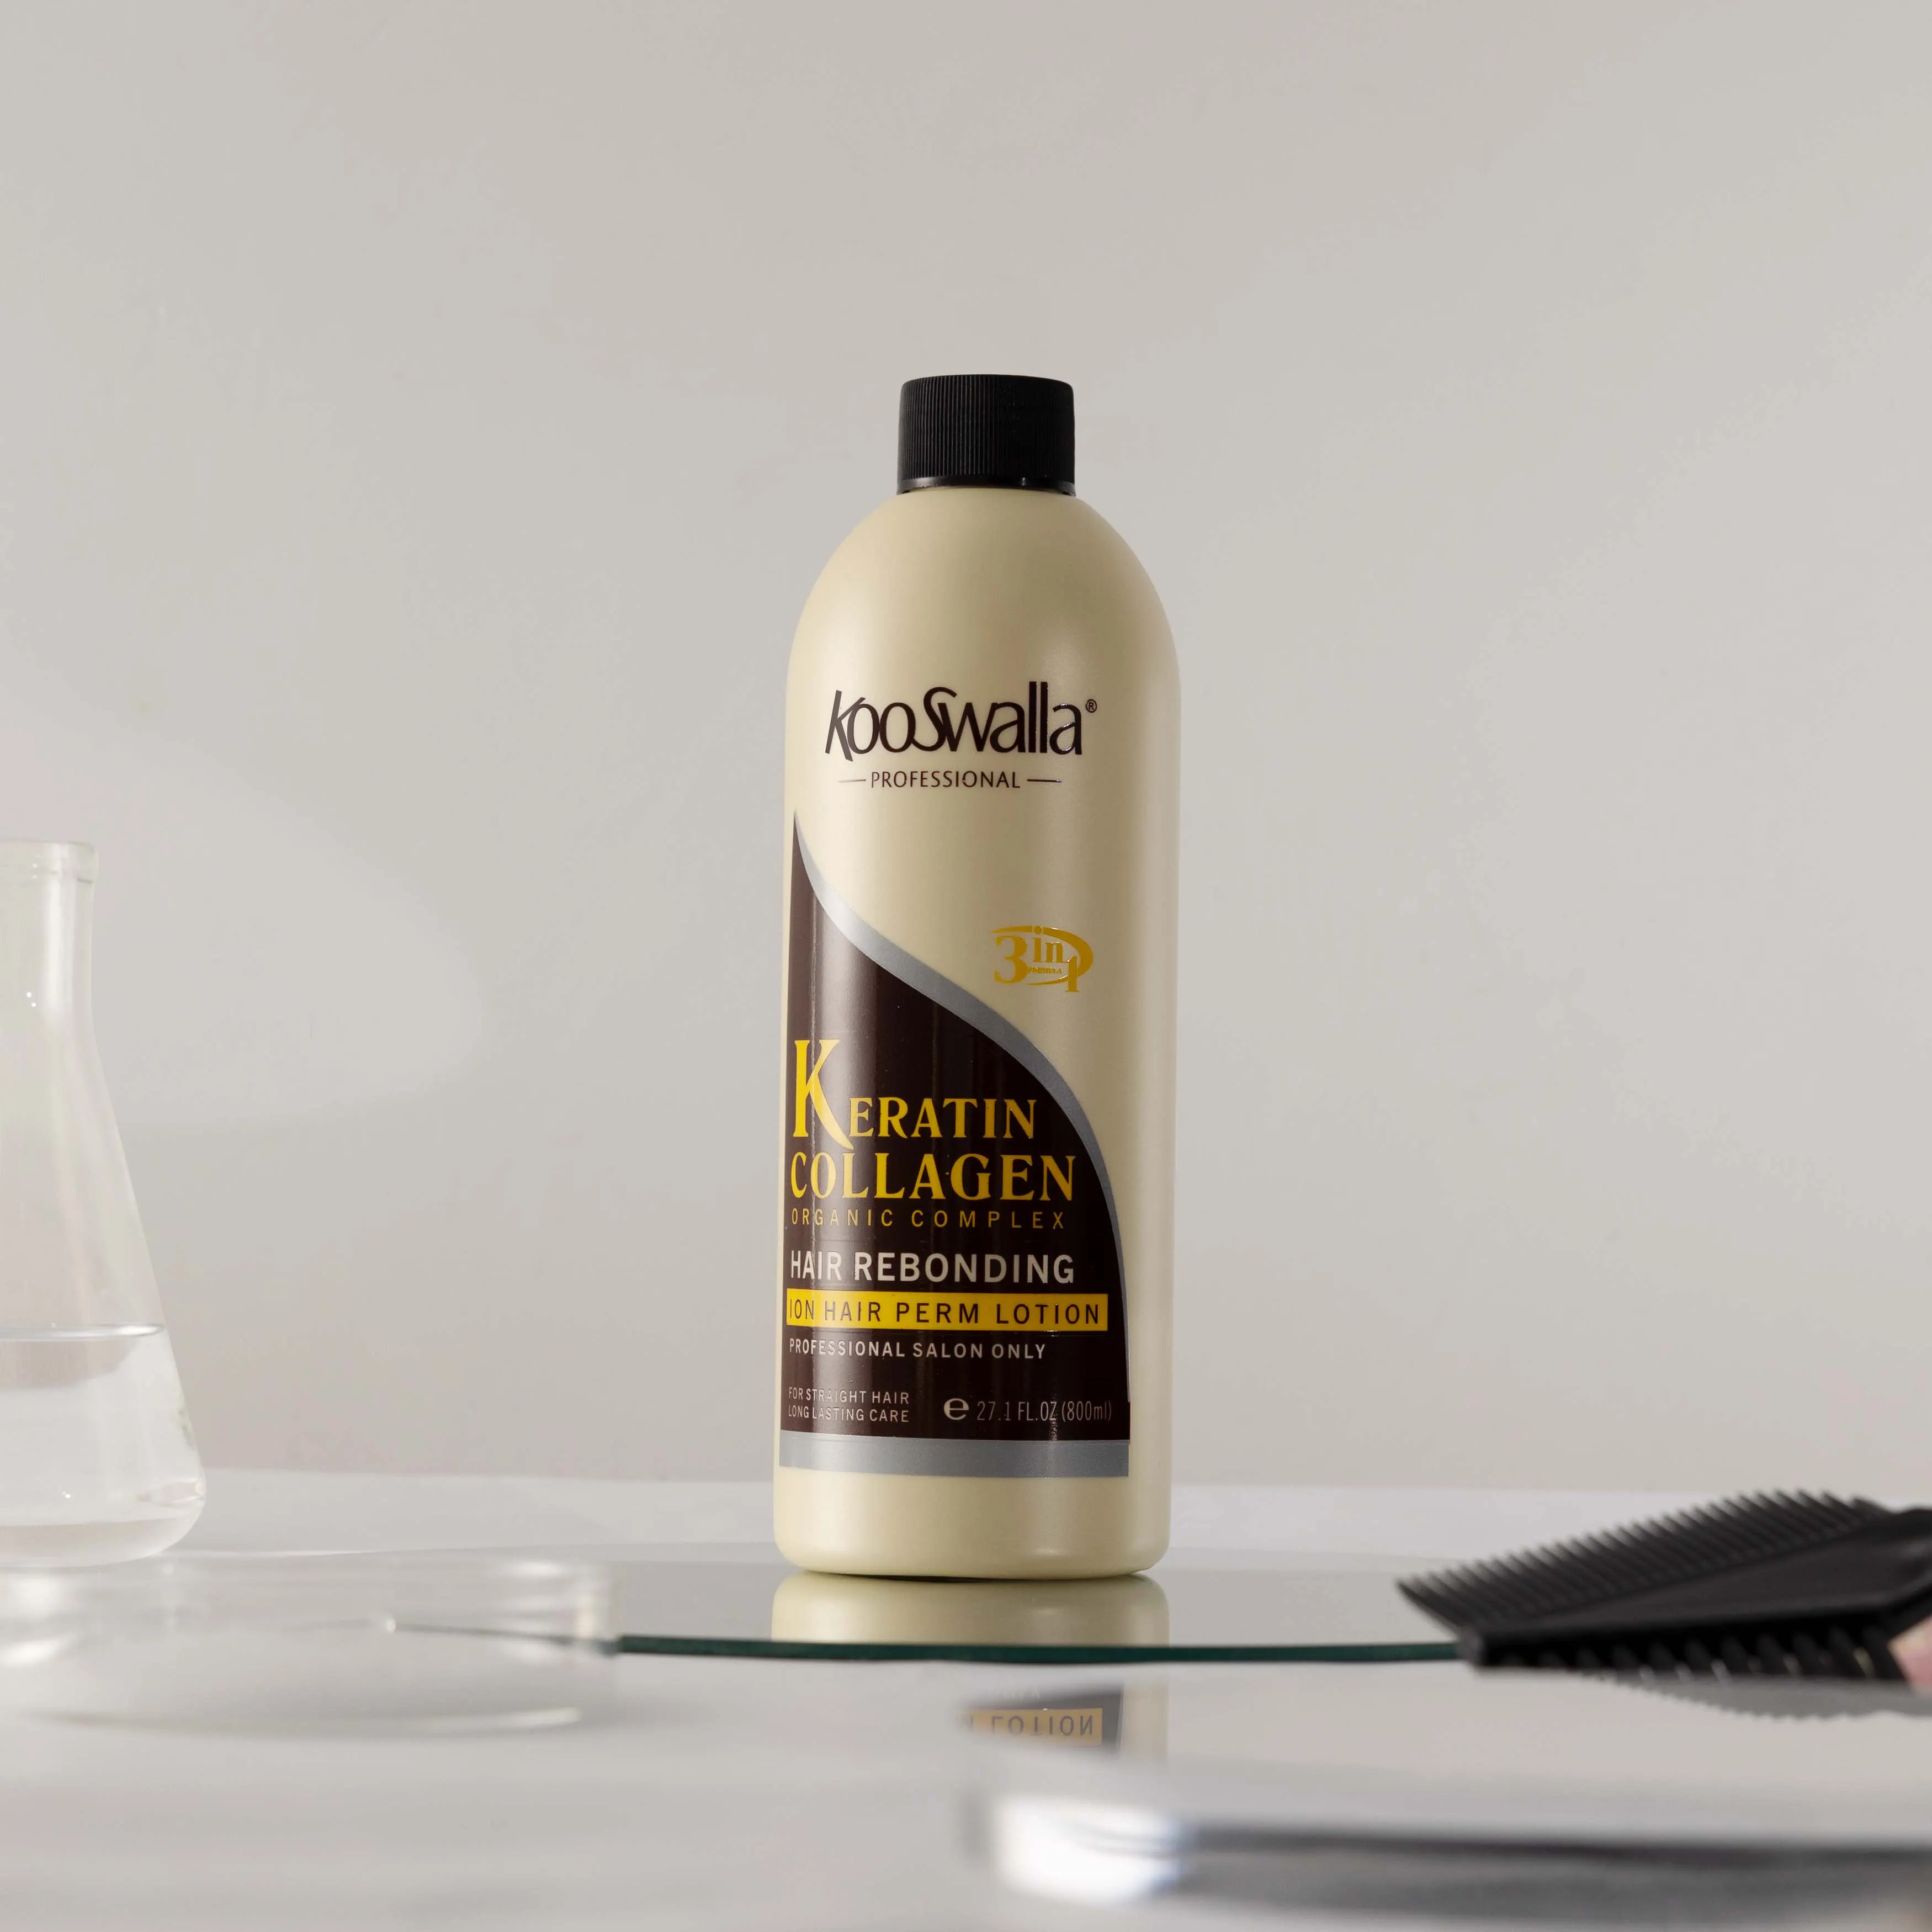 KooSwalla hafiflik saç düzleştirici ipeksi en iyi kalıcı 3in1 saç rebonding krem